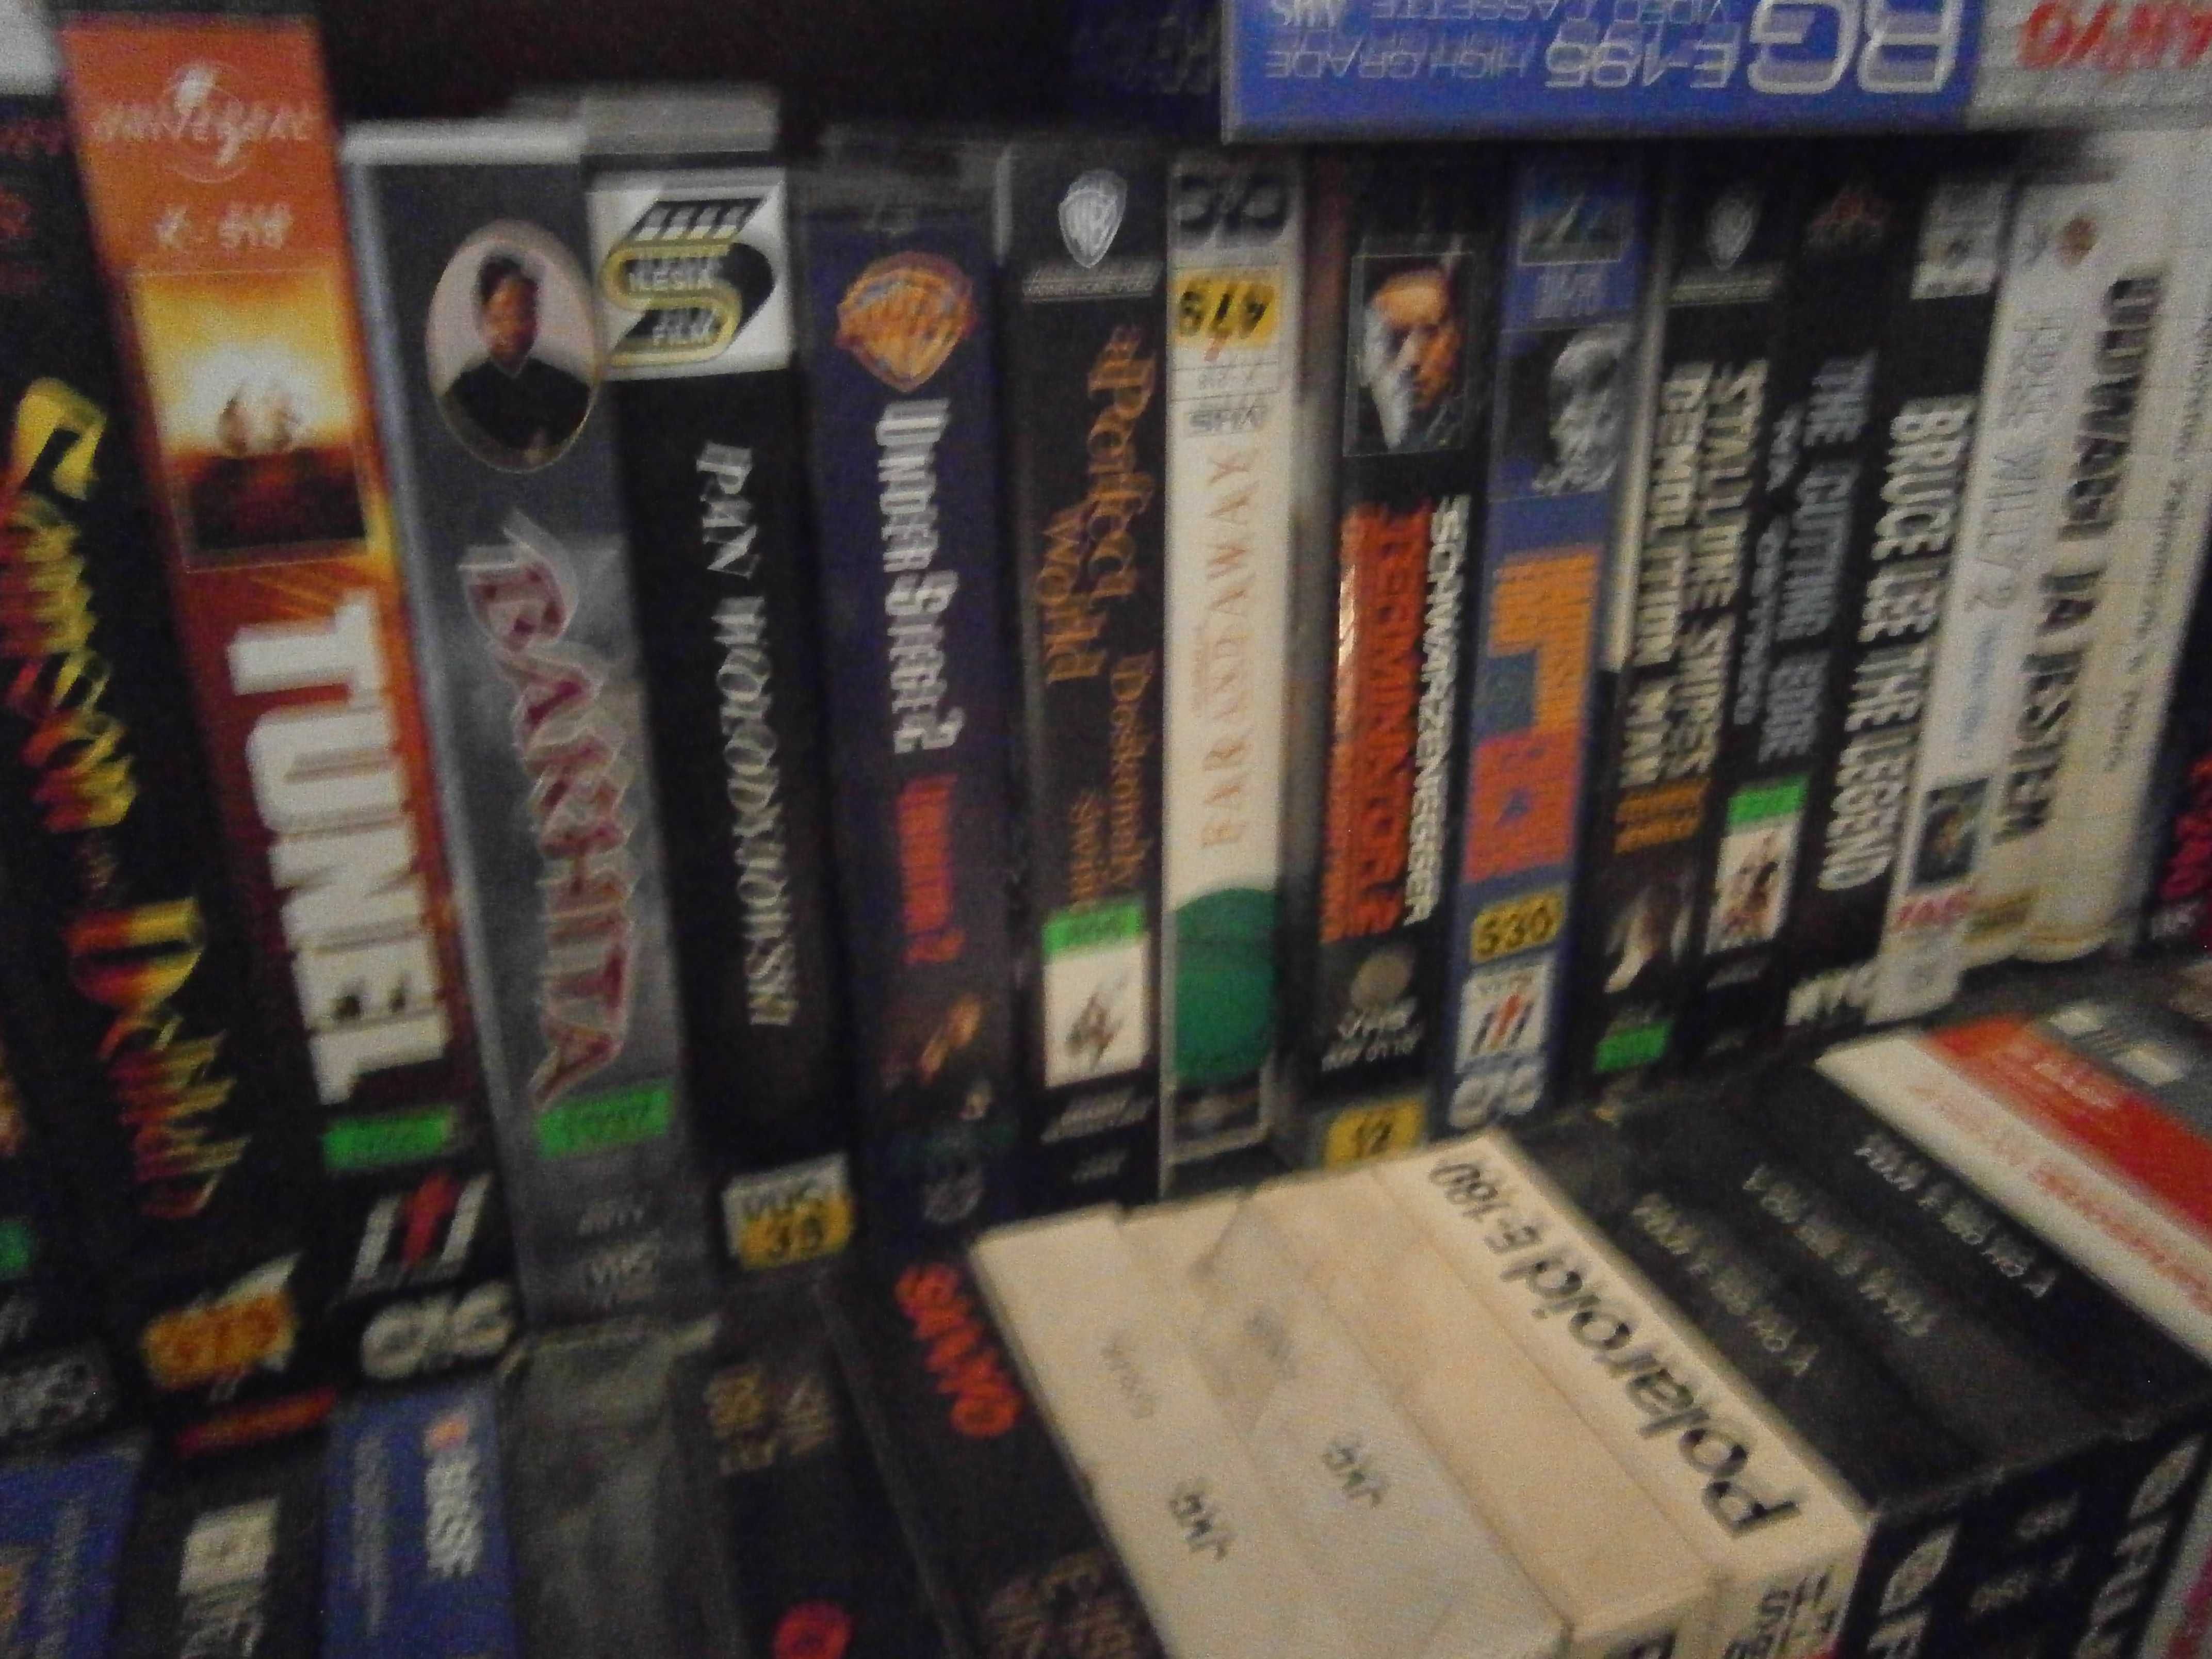 Filmy VHS kasety zestaw 25 filmów. W opisie.